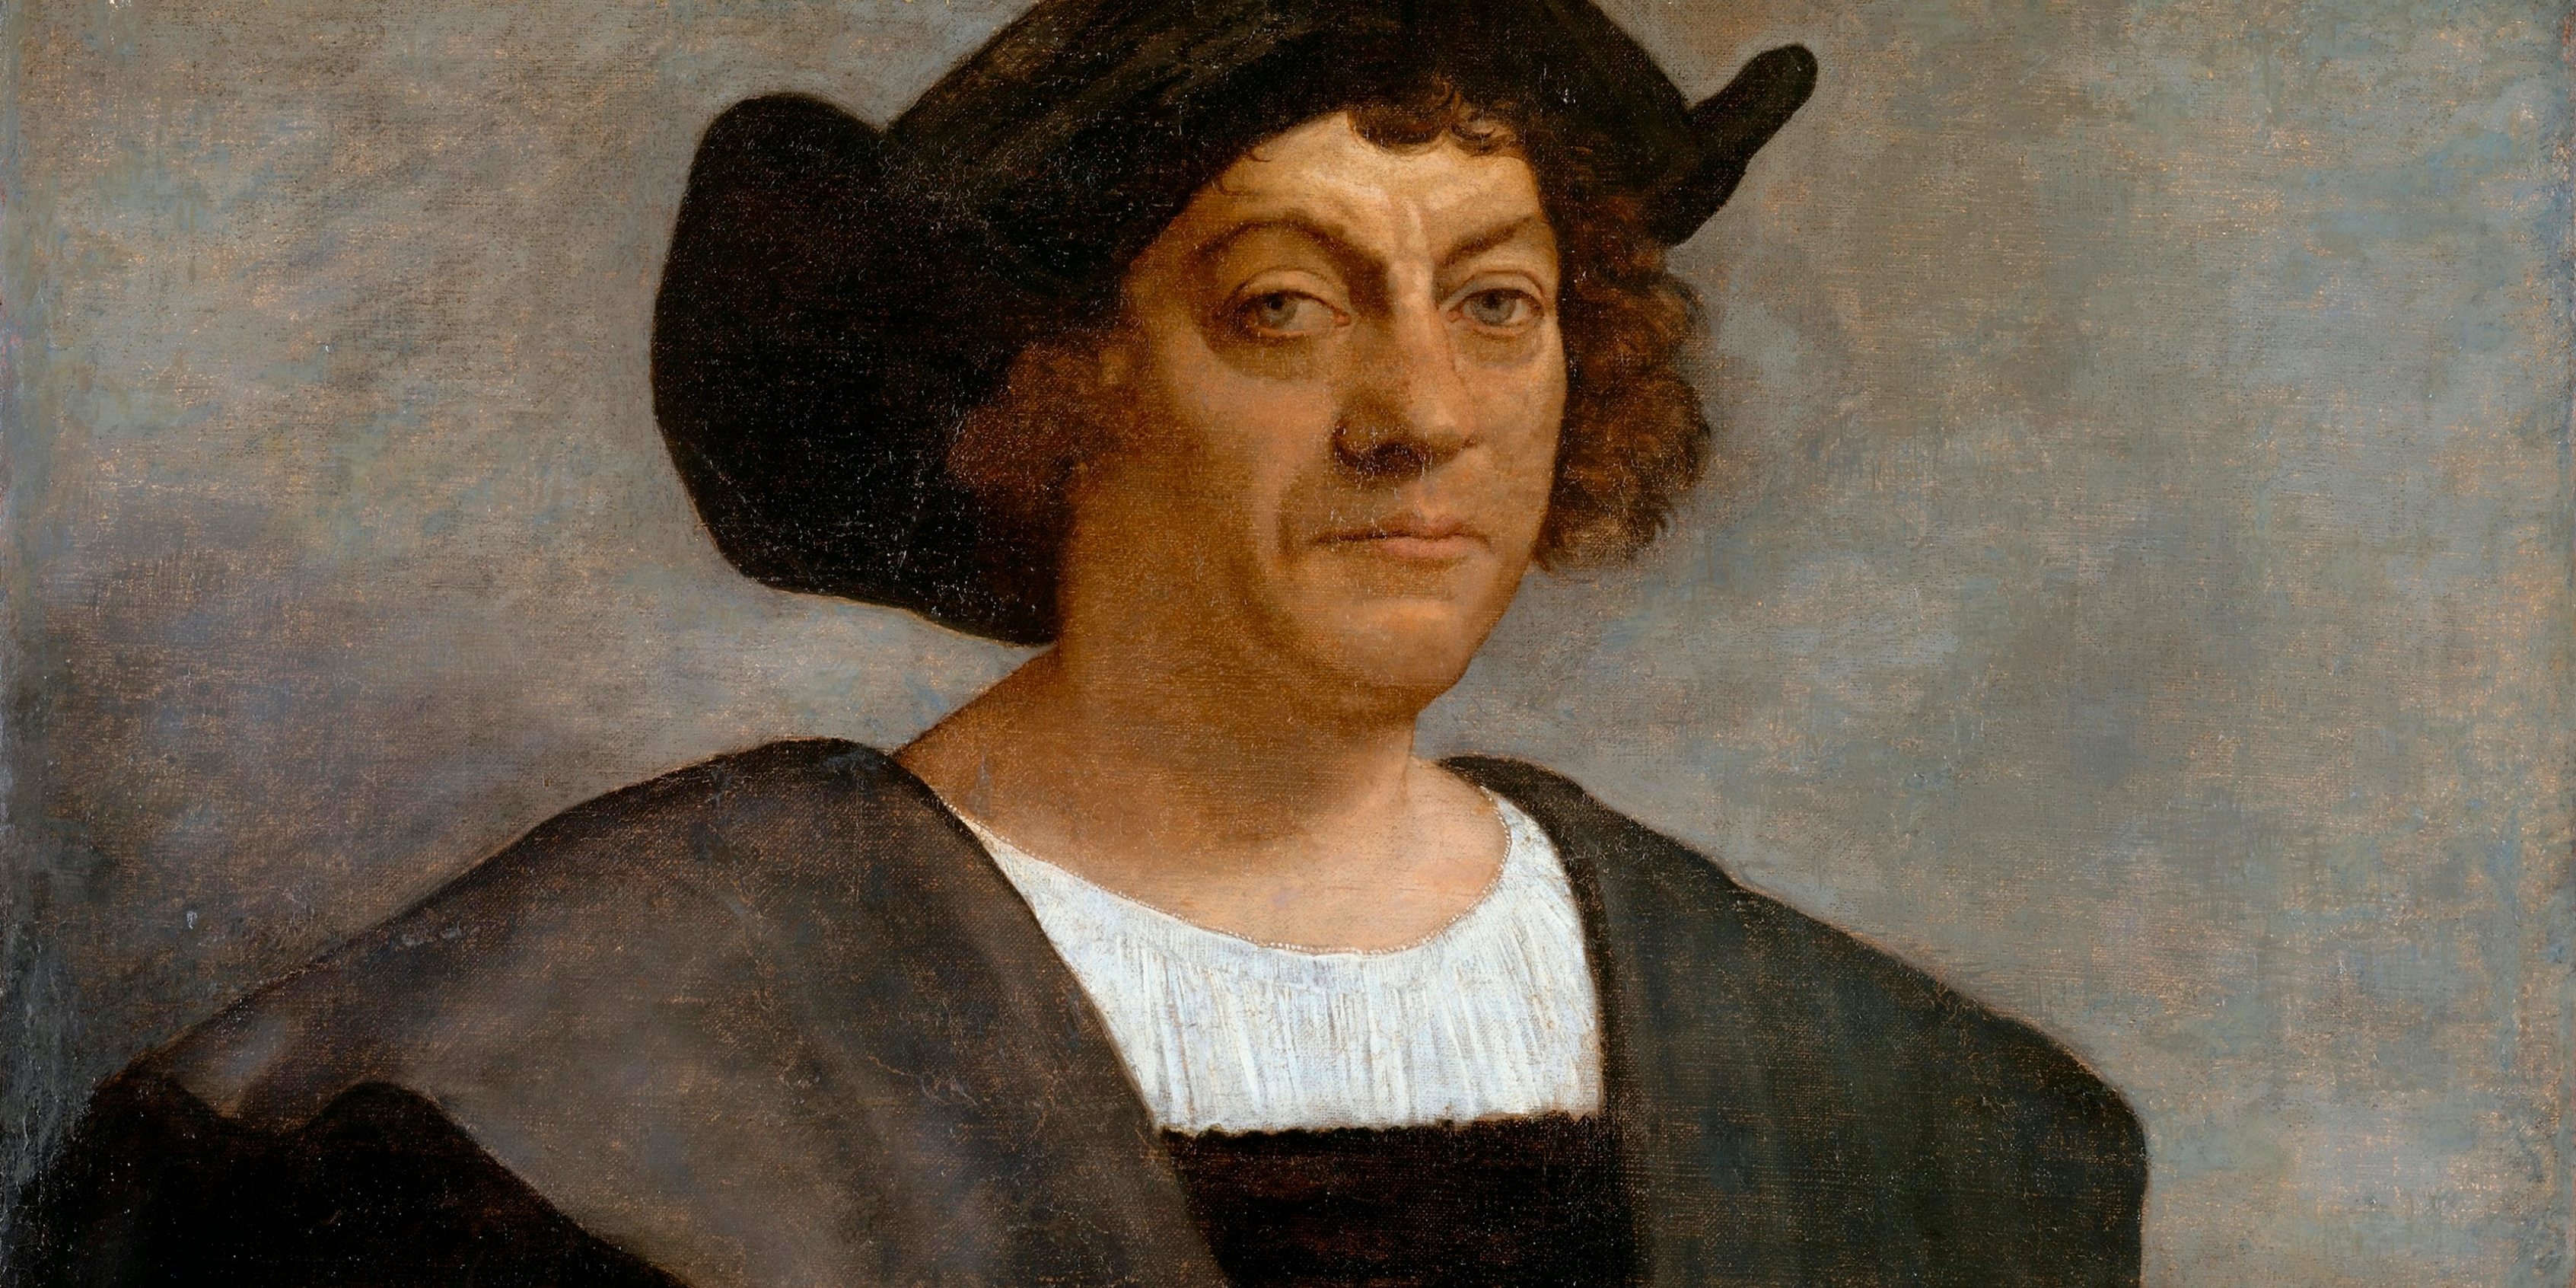 Retrato de um homem que se acredita ser Cristóvão Colombo, executado em 1519, 13 anos após a morte do navegador, pelo pintor italiano Sebastiano del Piombo